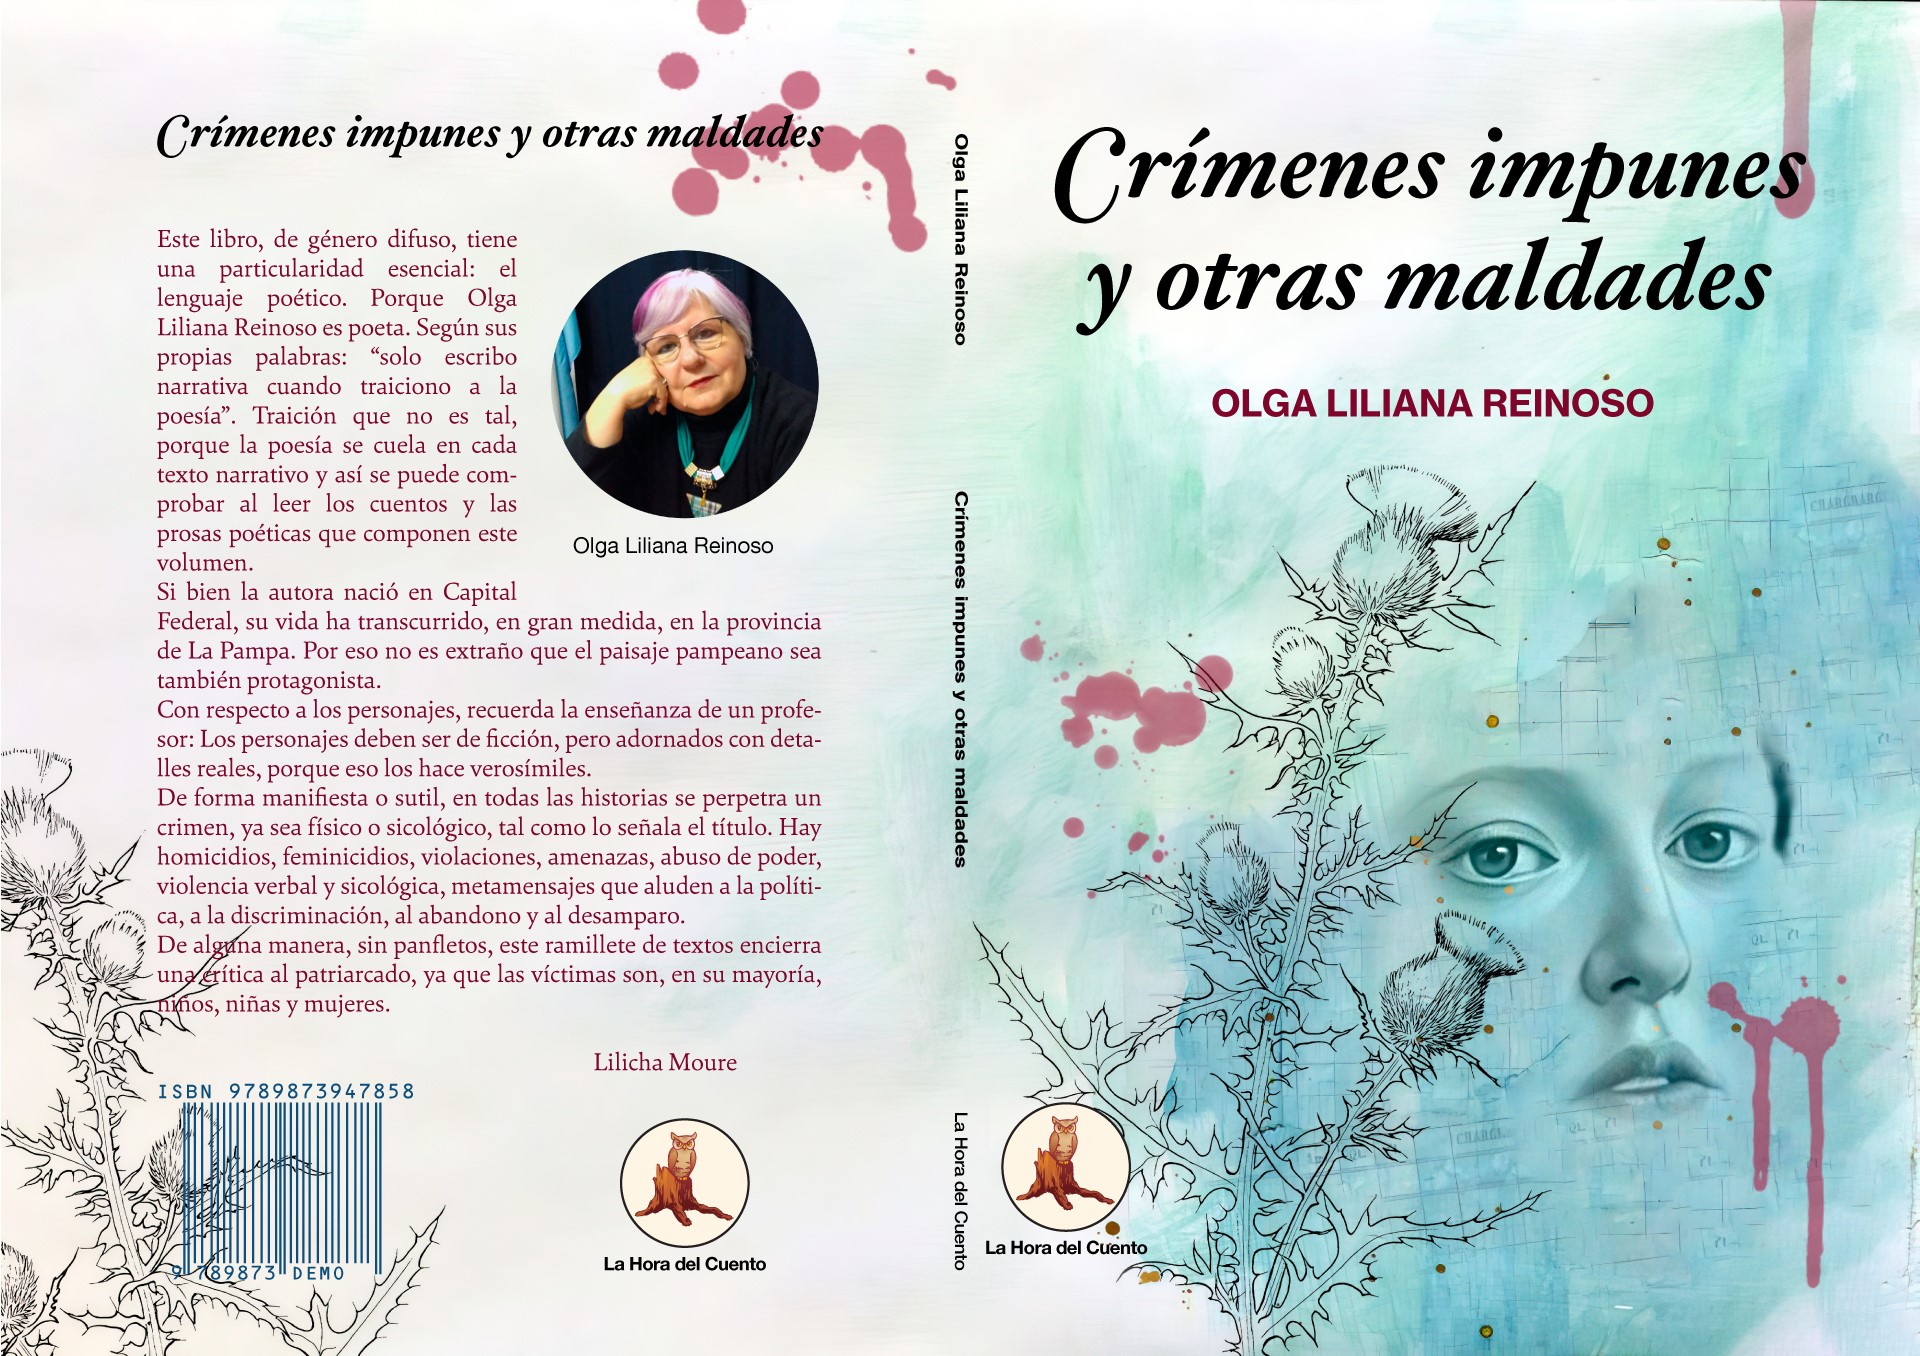 La escritora Olga Reinoso presentará su nuevo libro “Crímenes impunes y otras maldades”